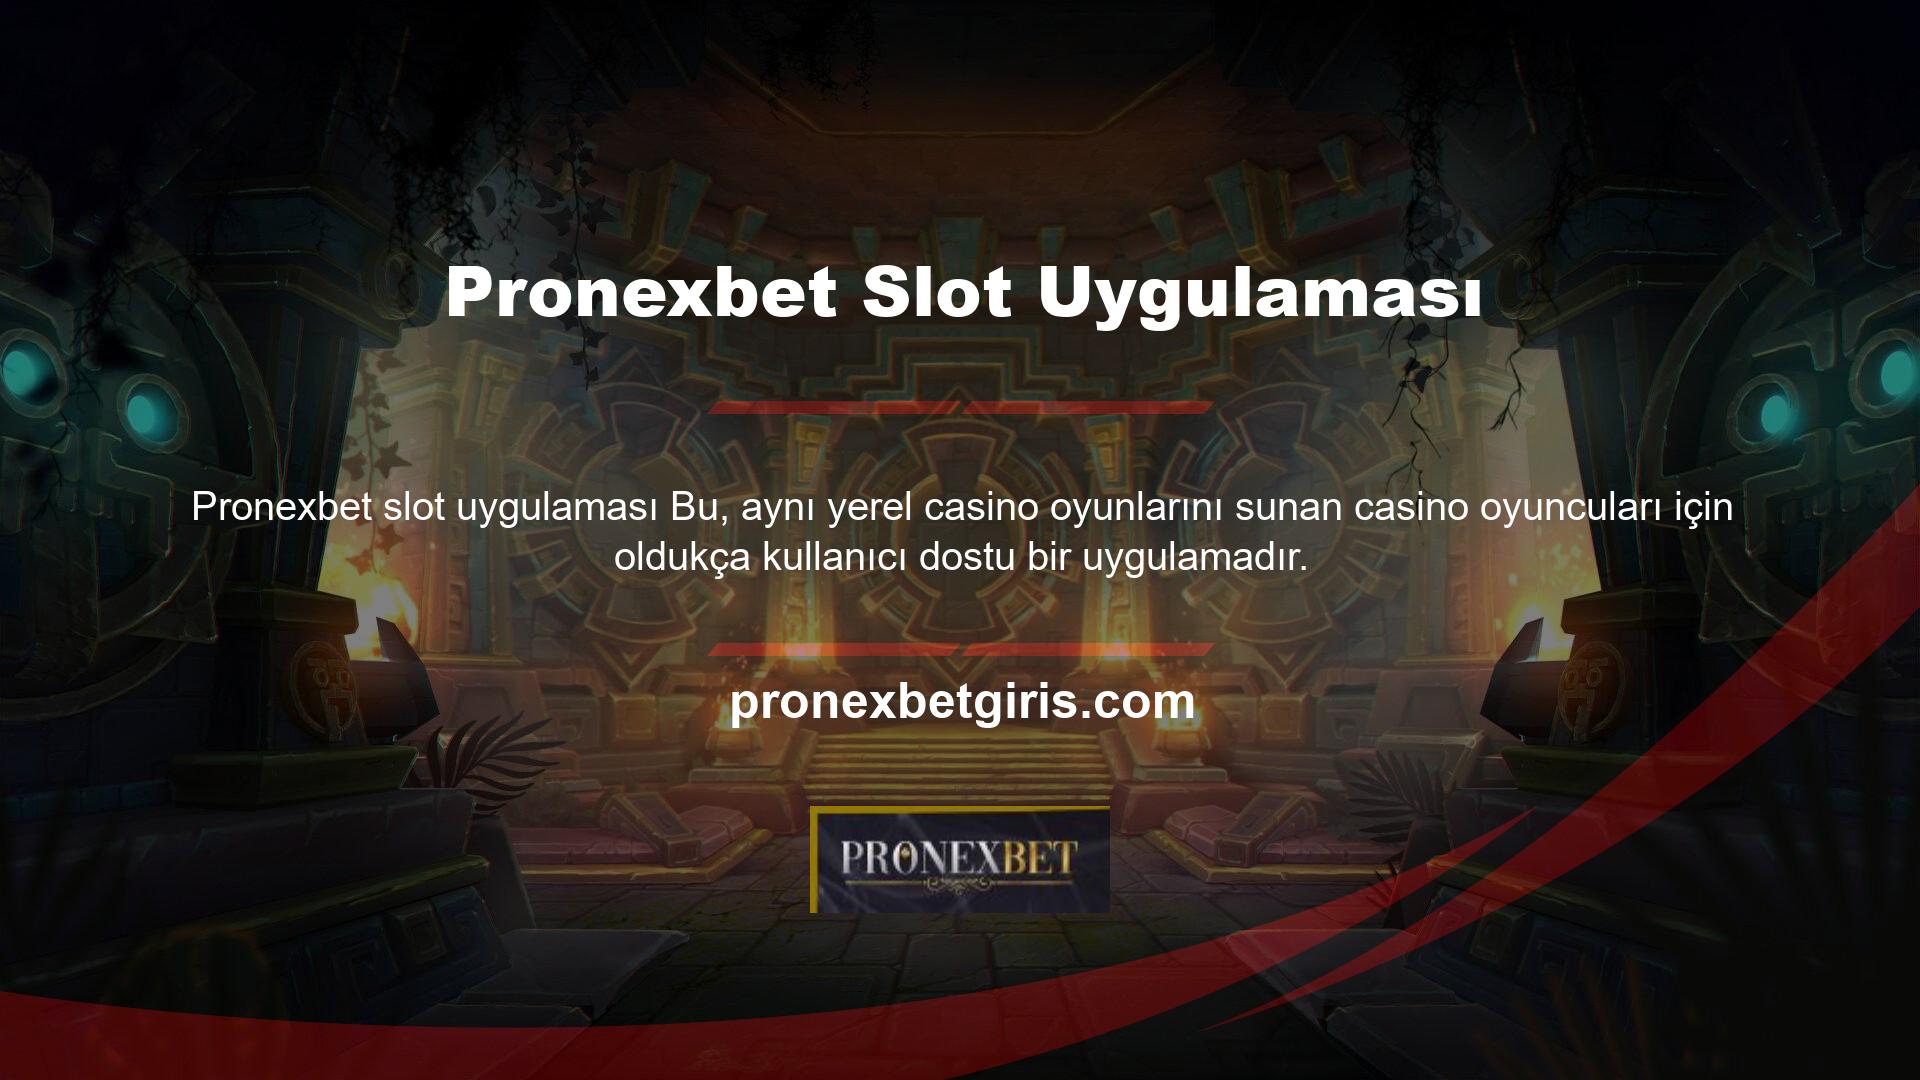 Tüm Pronexbet Casino ürünleri gibi, Pronexbet Slots Uygulaması da son derece kullanışlı ve iyi tasarlanmış